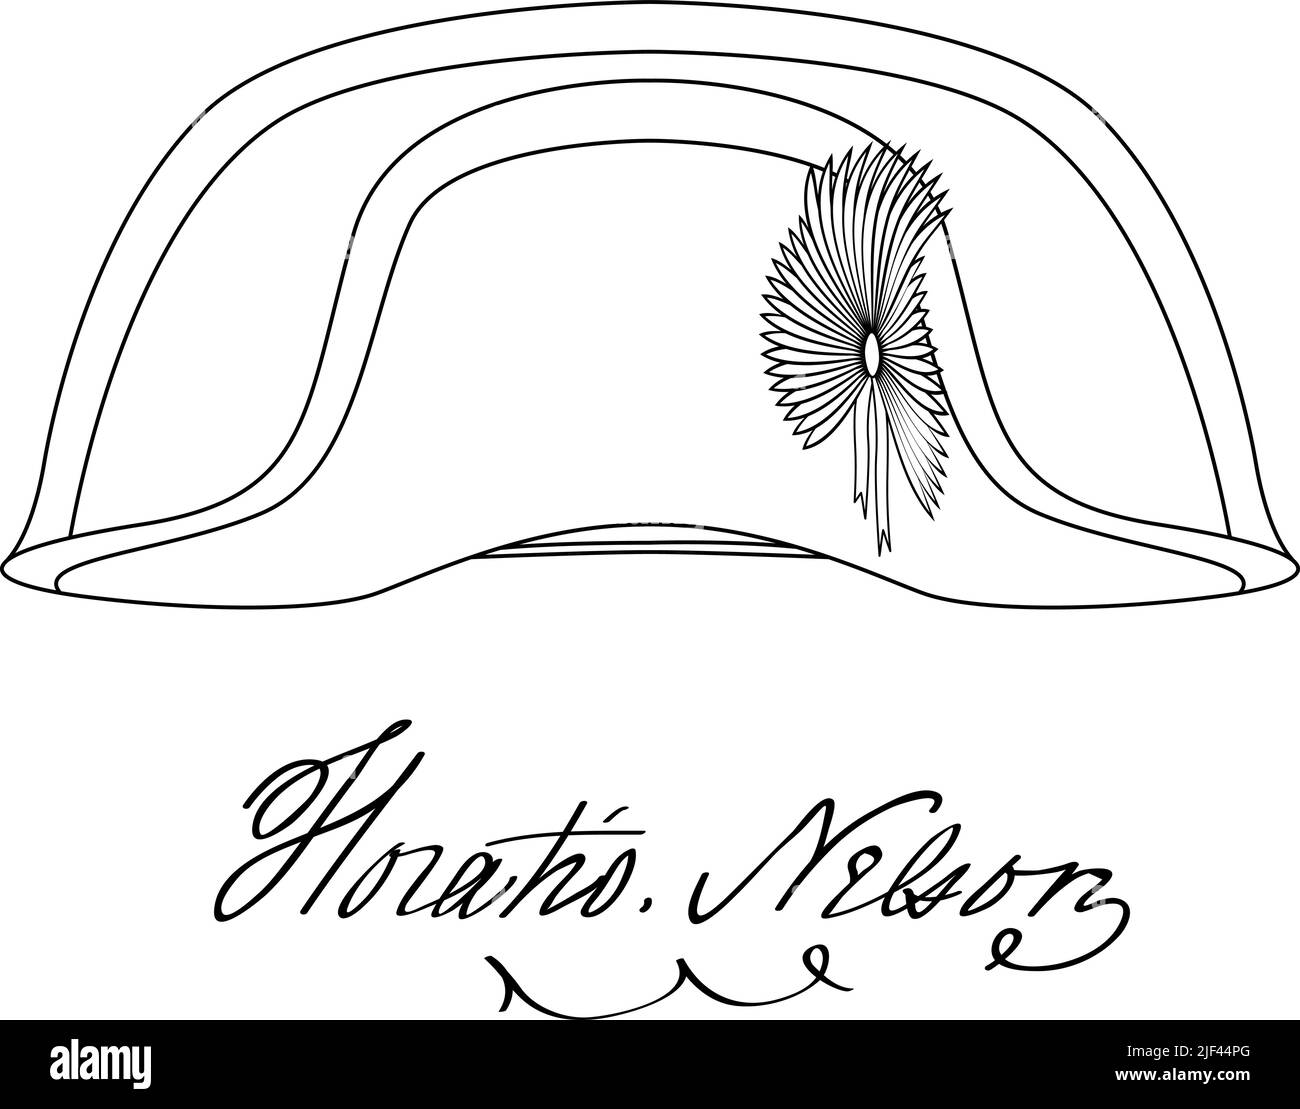 Horatio Nelson Hut und Unterschrift, berühmter britischer Admiral, Vektorgrafik Stock Vektor